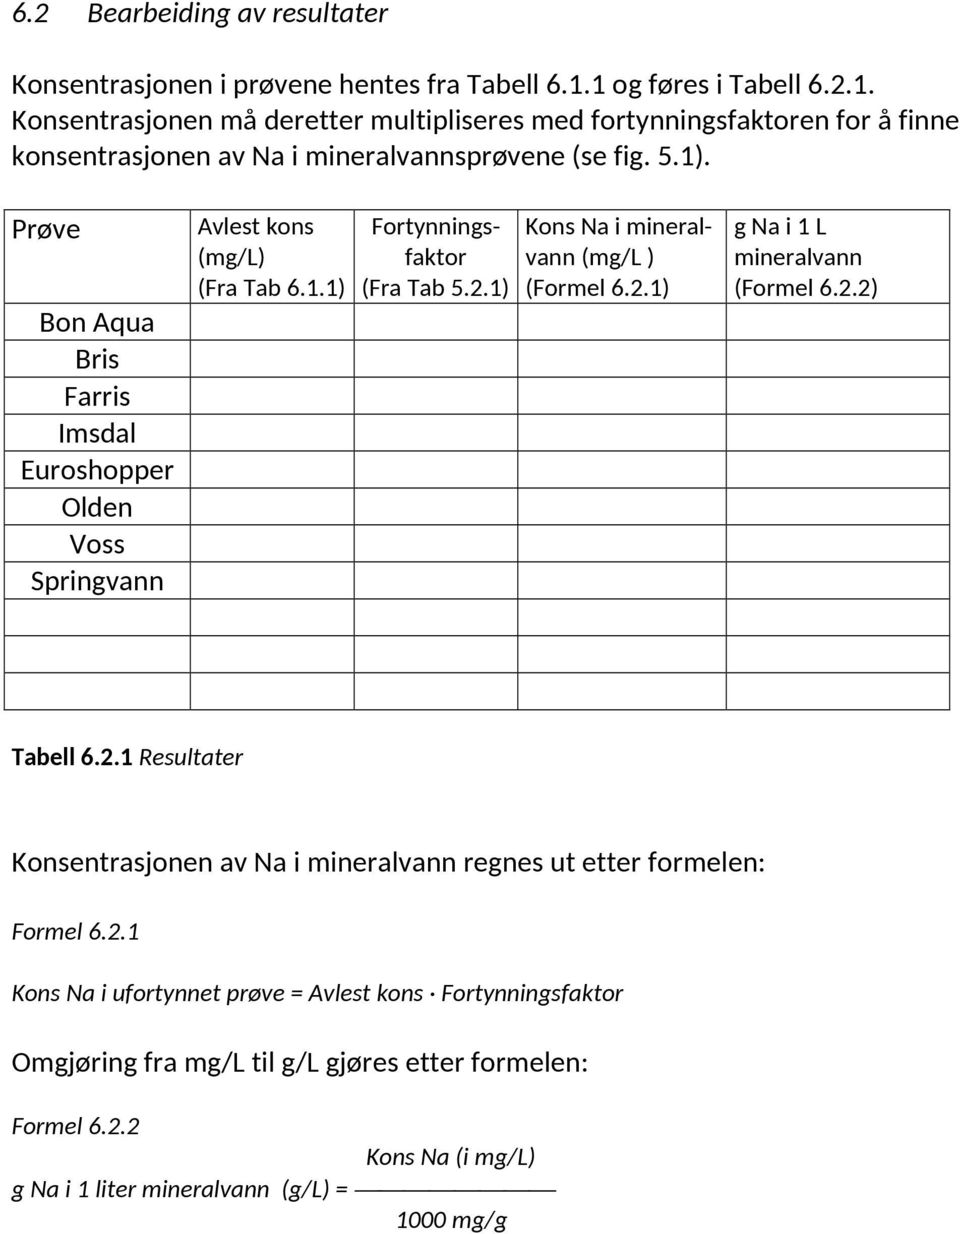 Prøve Bon Aqua Bris Farris Imsdal Euroshopper Olden Voss Springvann Avlest kons (mg/l) (Fra Tab 6.1.1) Fortynningsfaktor (Fra Tab 5.2.1) Kons Na i mineralvann (mg/l ) (Formel 6.2.1) g Na i 1 L mineralvann (Formel 6.